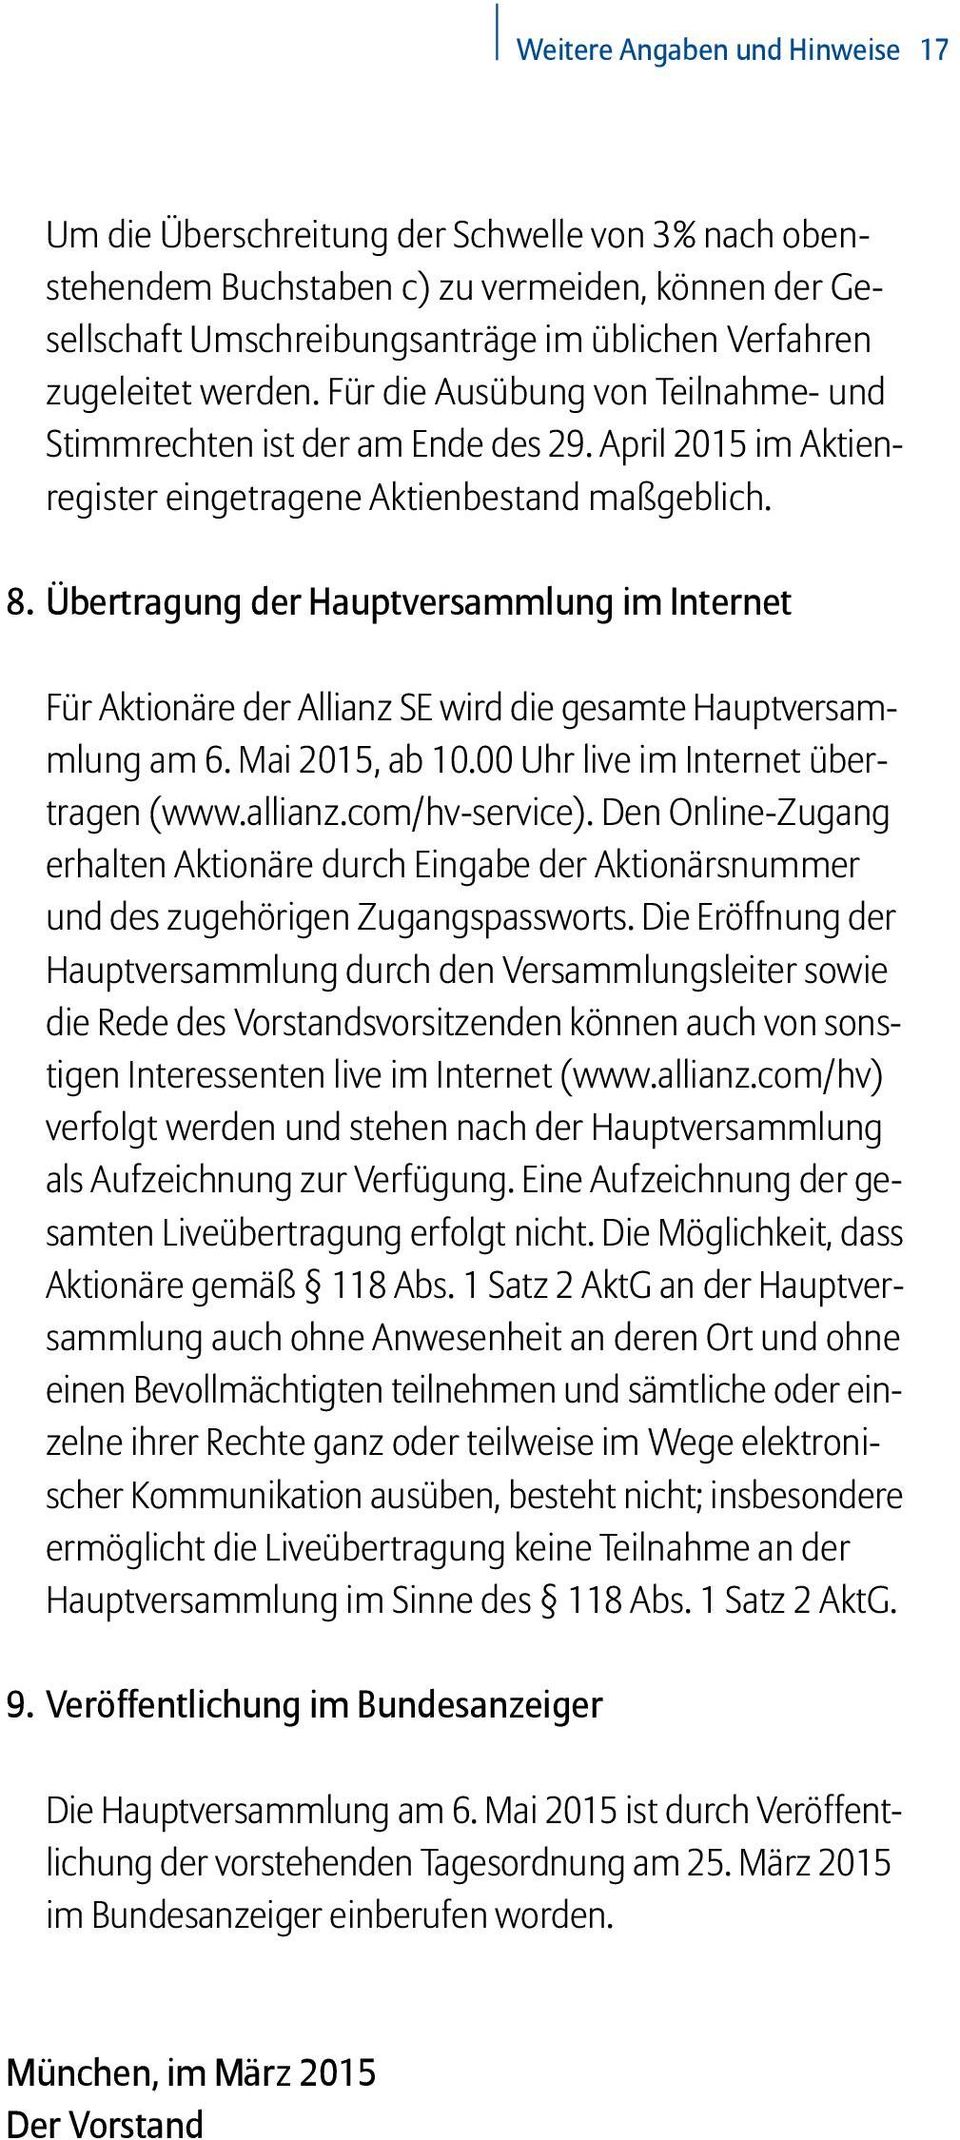 Übertragung der Hauptversammlung im Internet Für Aktionäre der Allianz SE wird die gesamte Hauptversammlung am 6. Mai 2015, ab 10.00 Uhr live im Internet übertragen (www.allianz.com/hv-service).